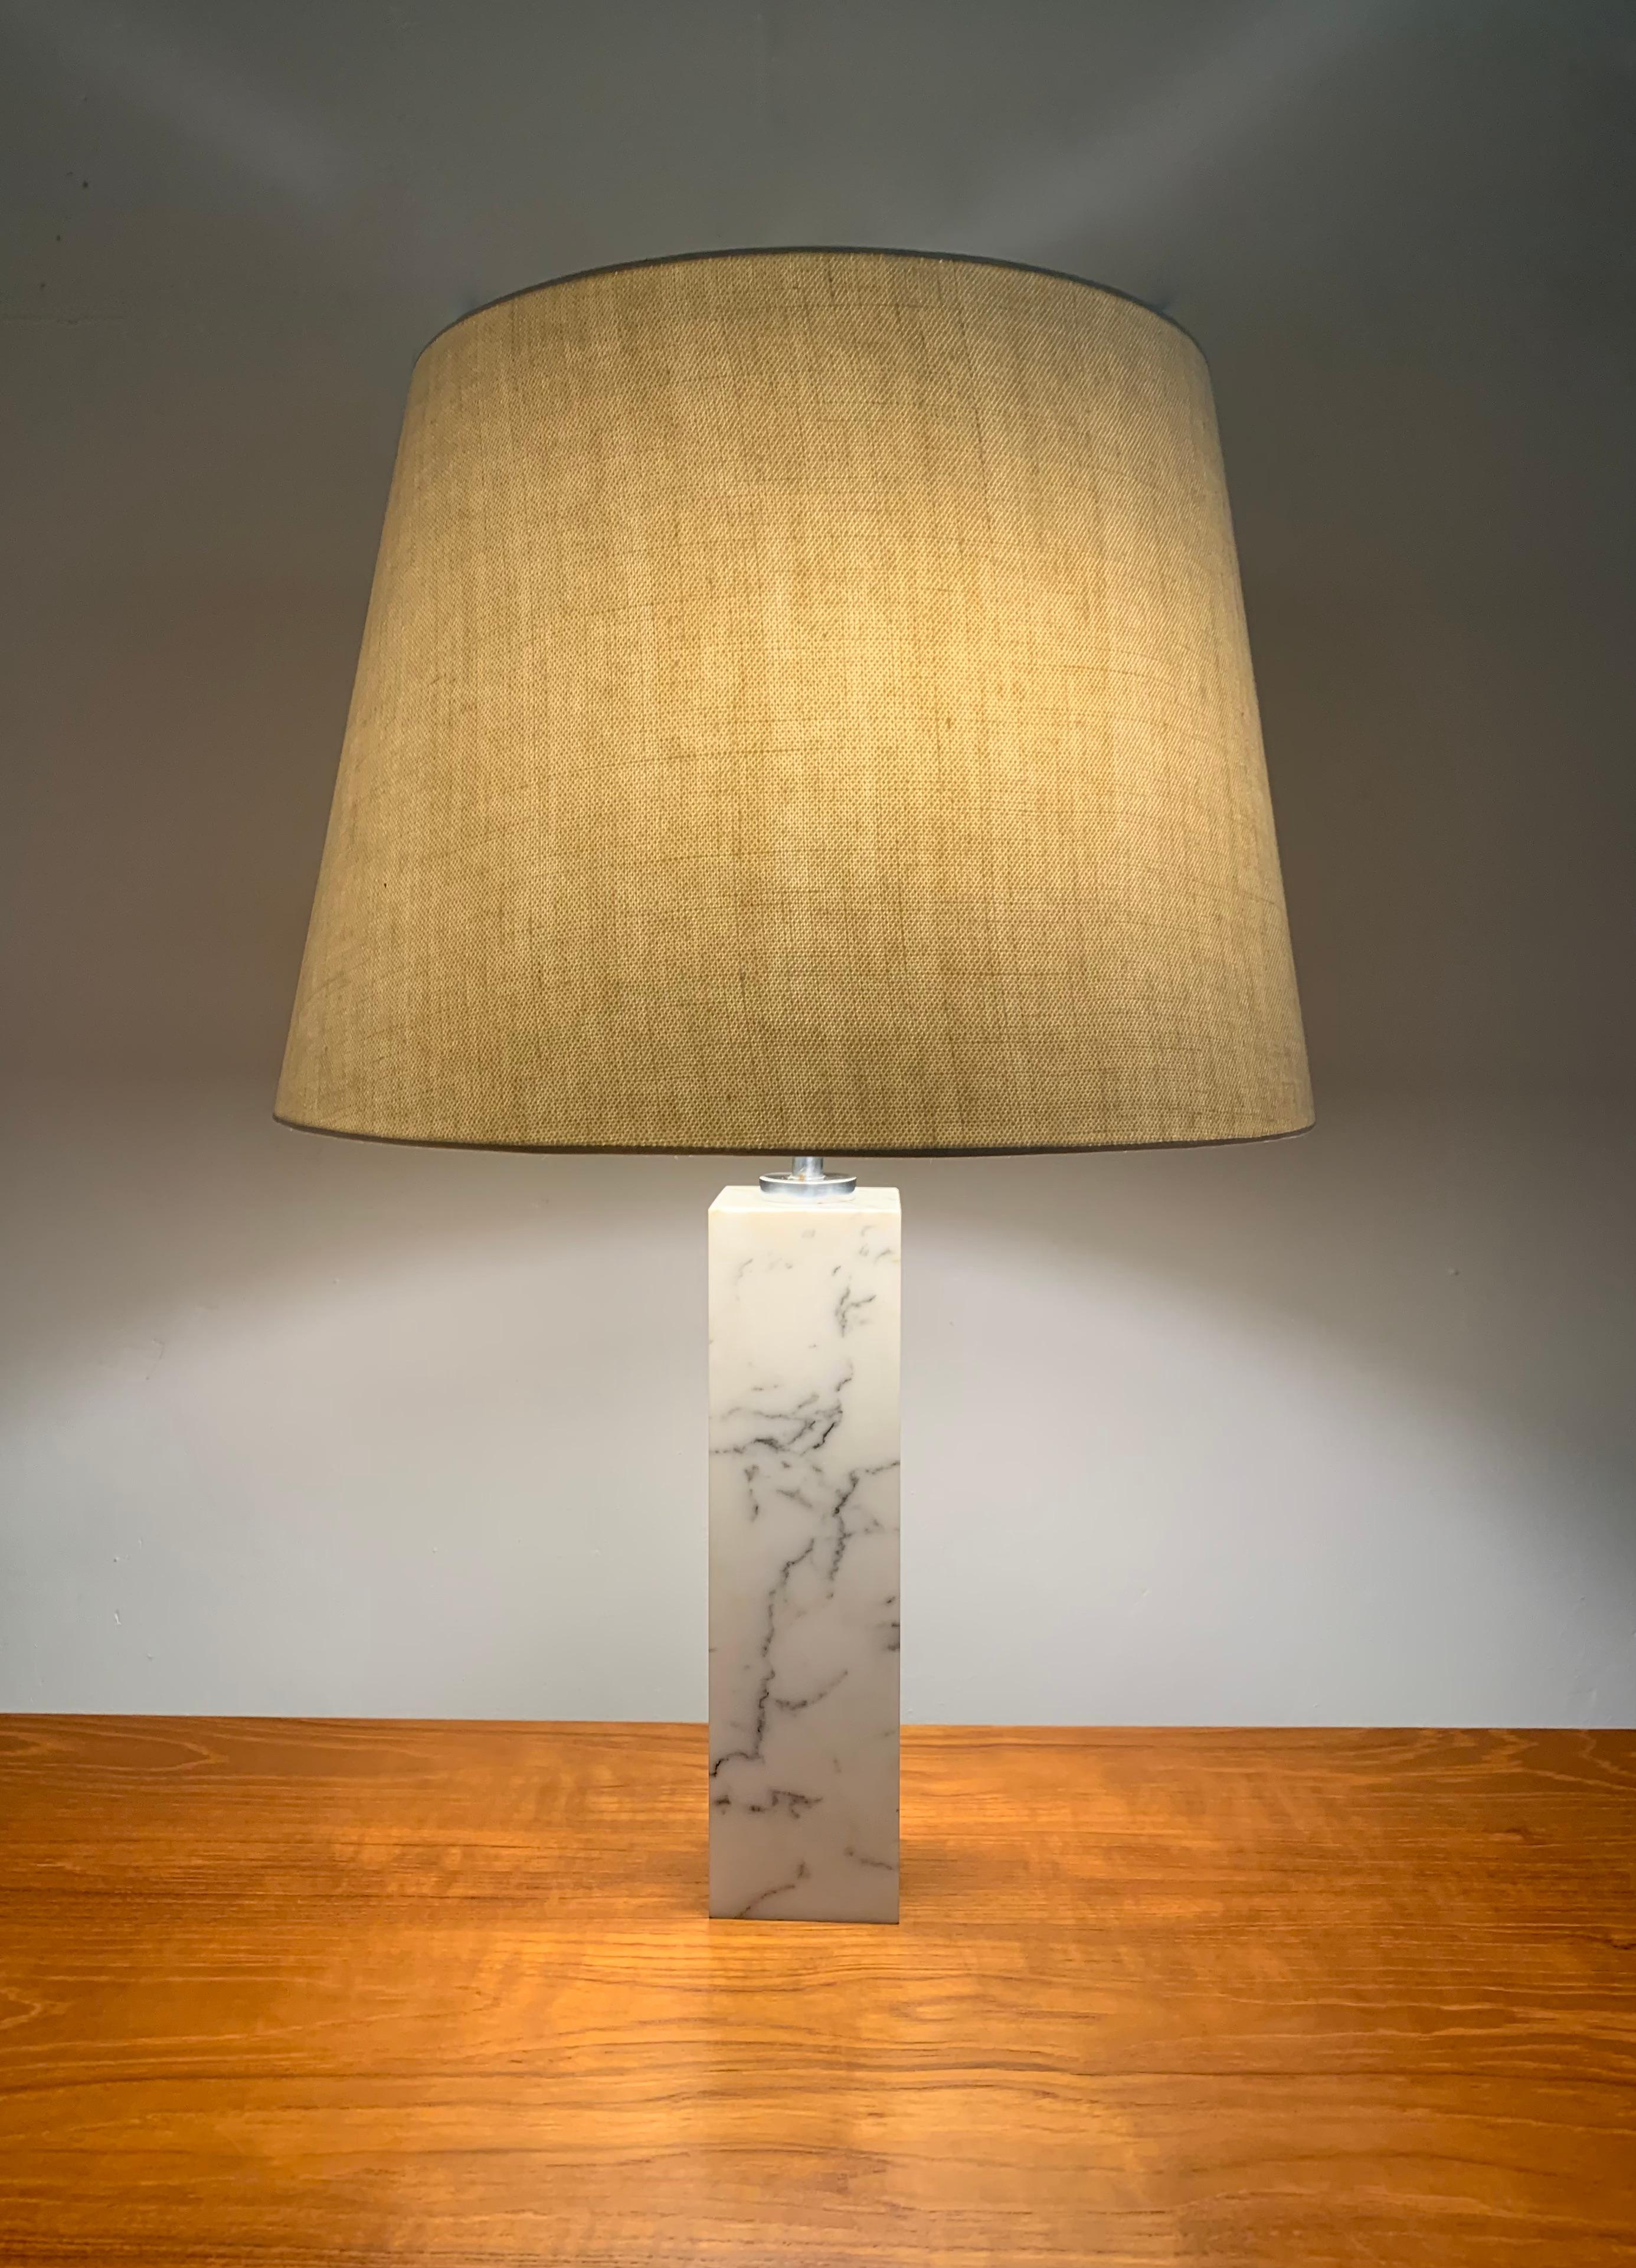 Tischleuchte mit quadratischem Sockel aus Carrara-Marmor, Modell 180, von Florence Knoll. 
Herausgegeben von Knoll International in den 1960er Jahren. 

Die Lampe ist mit ihrem Originalschirm ausgestattet, der mit einem schönen Baumwoll- und